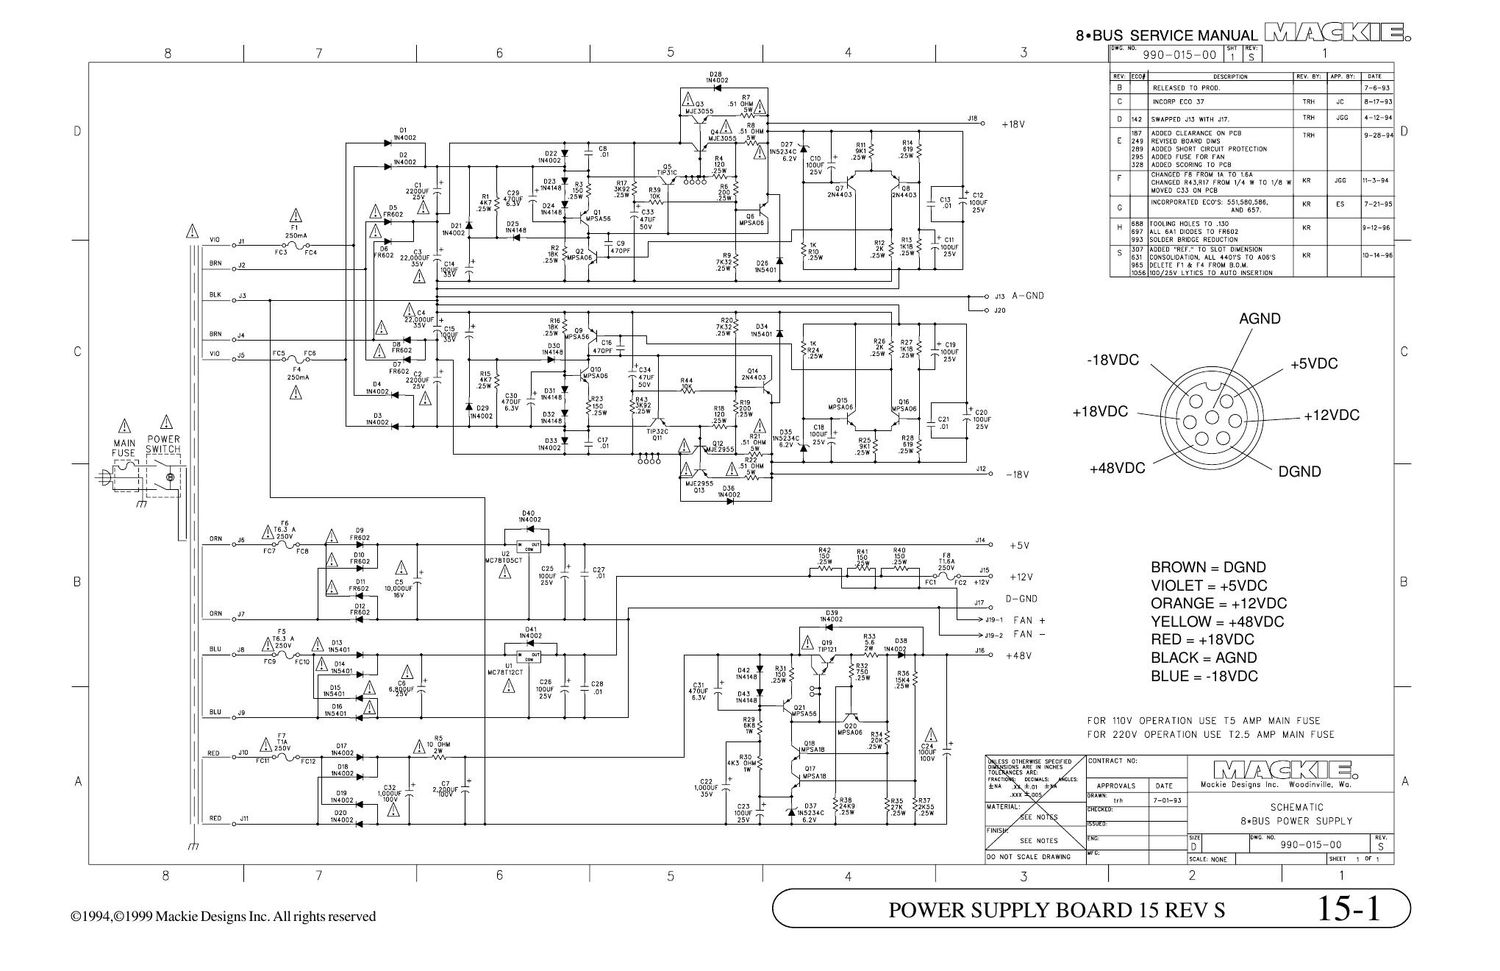 Mackie 8bus Power Supply Schematic